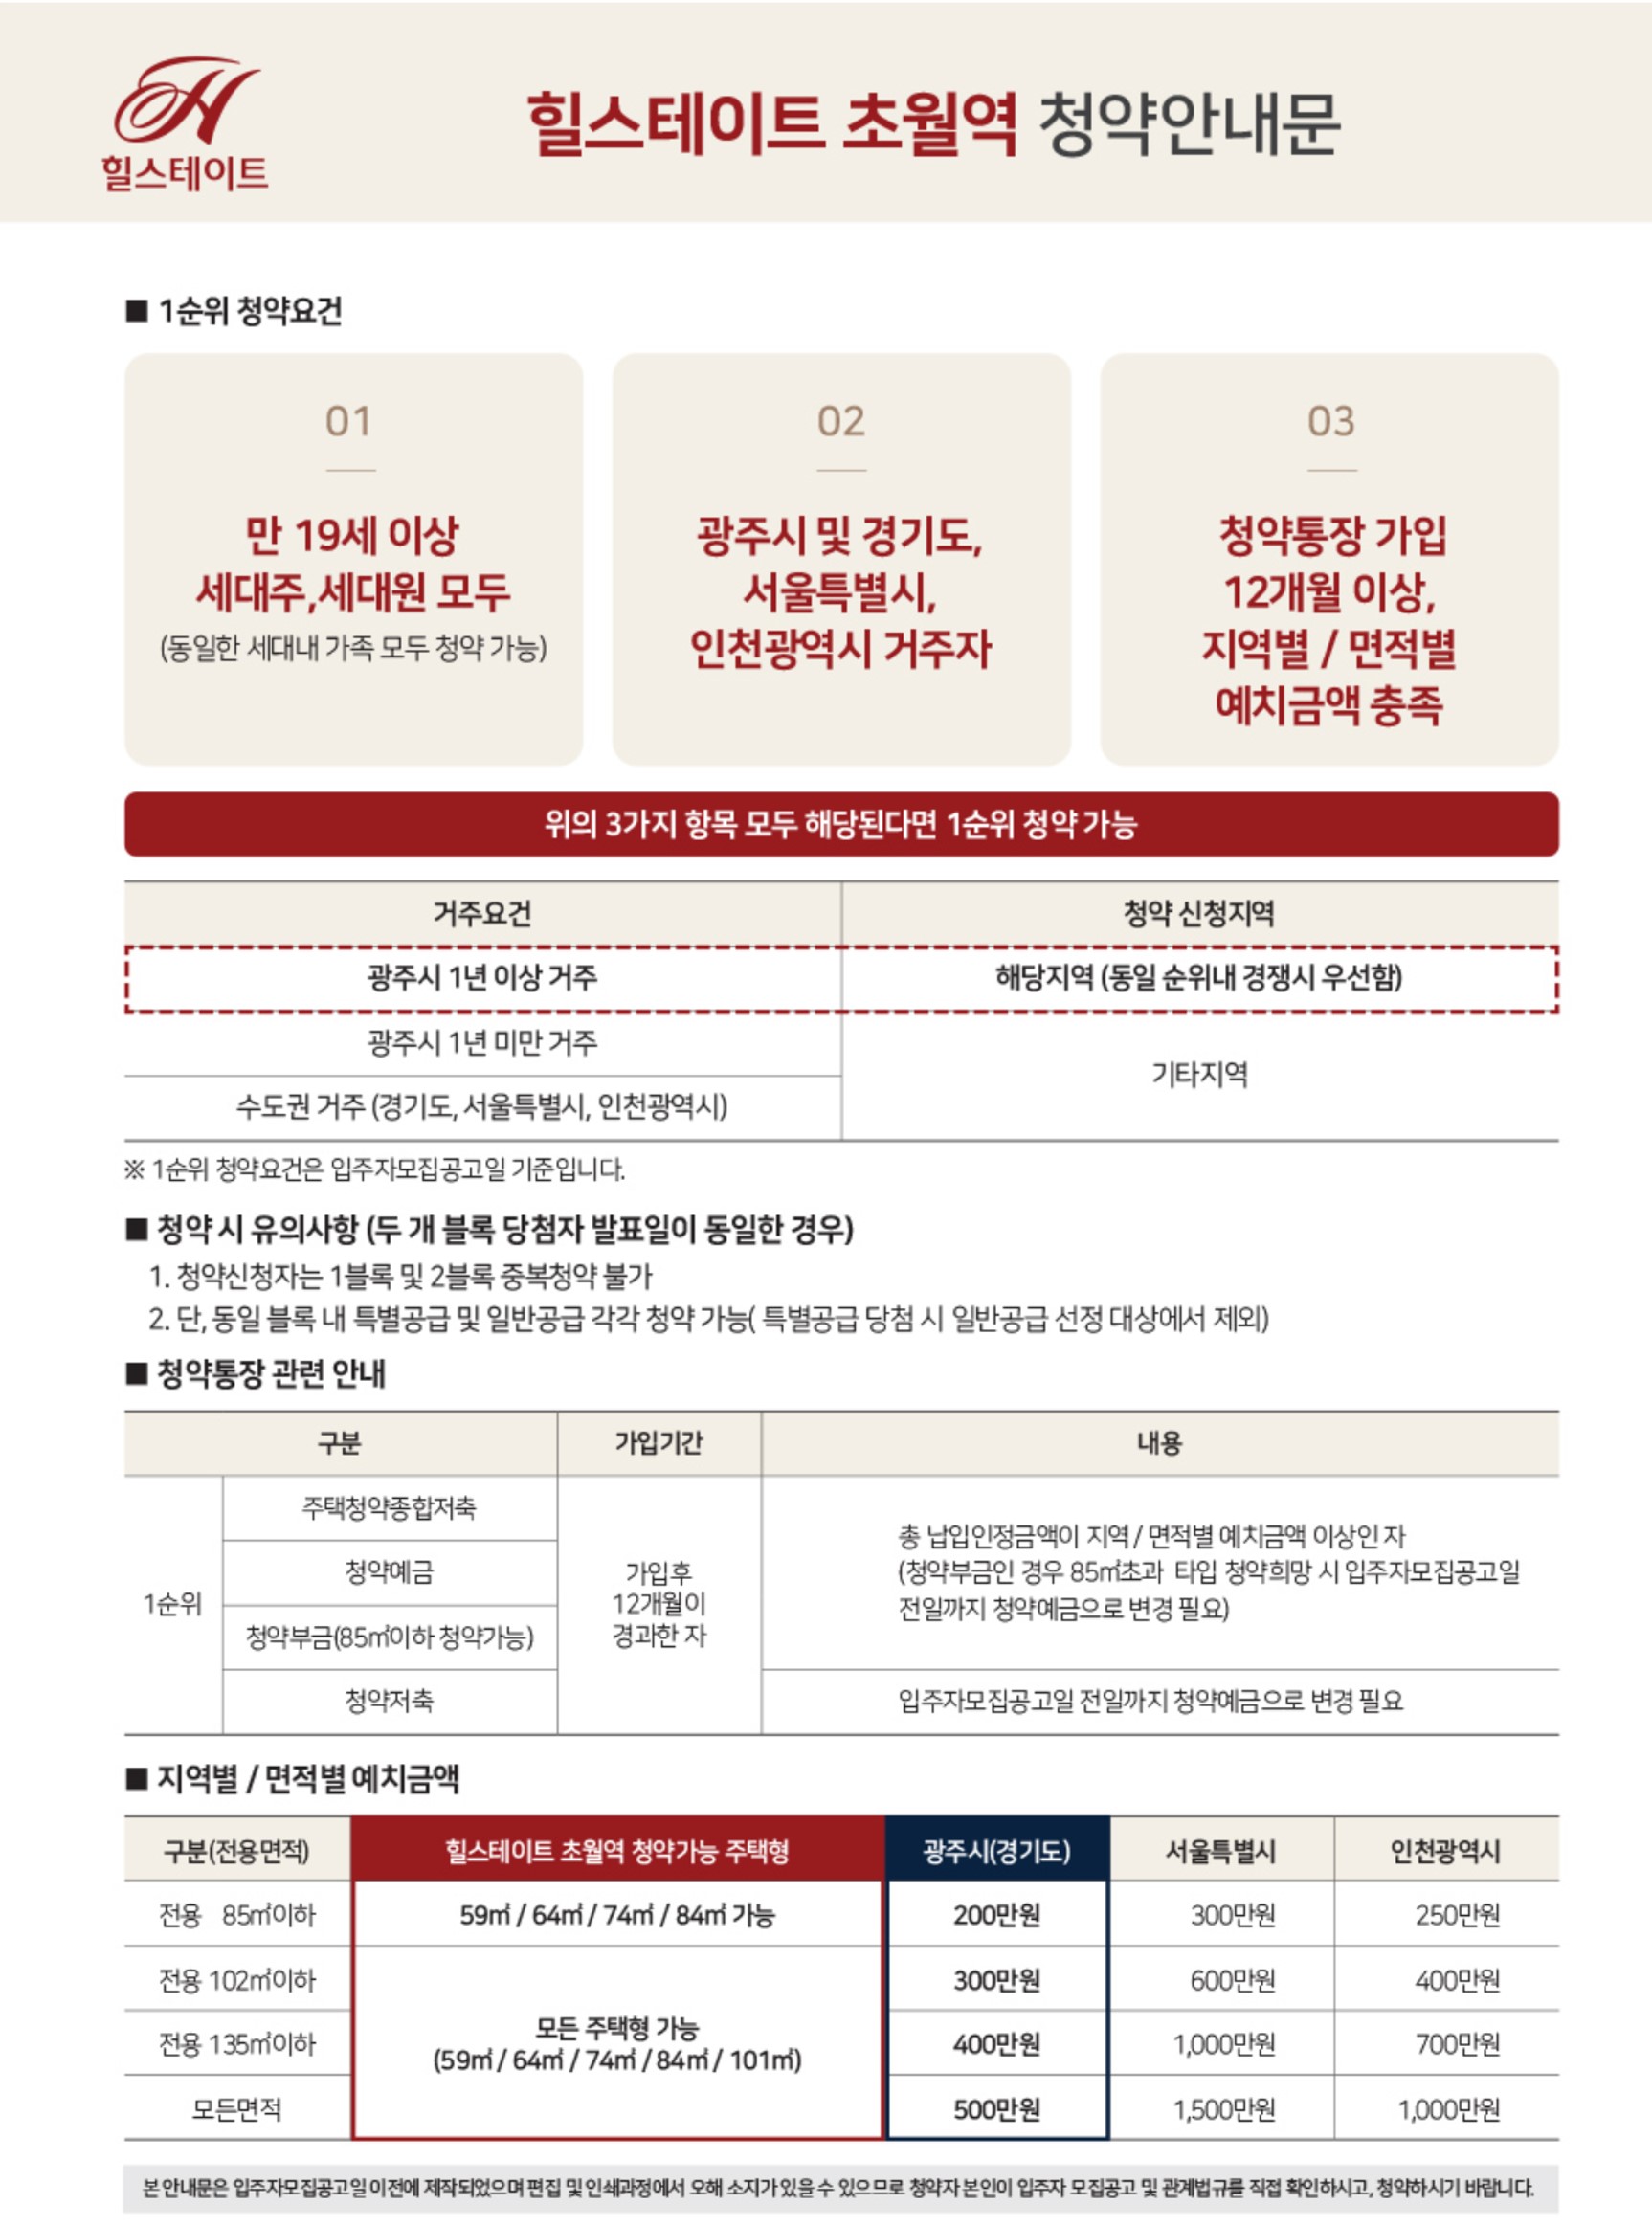 초월역 힐스테이트 청약정보 분양정보